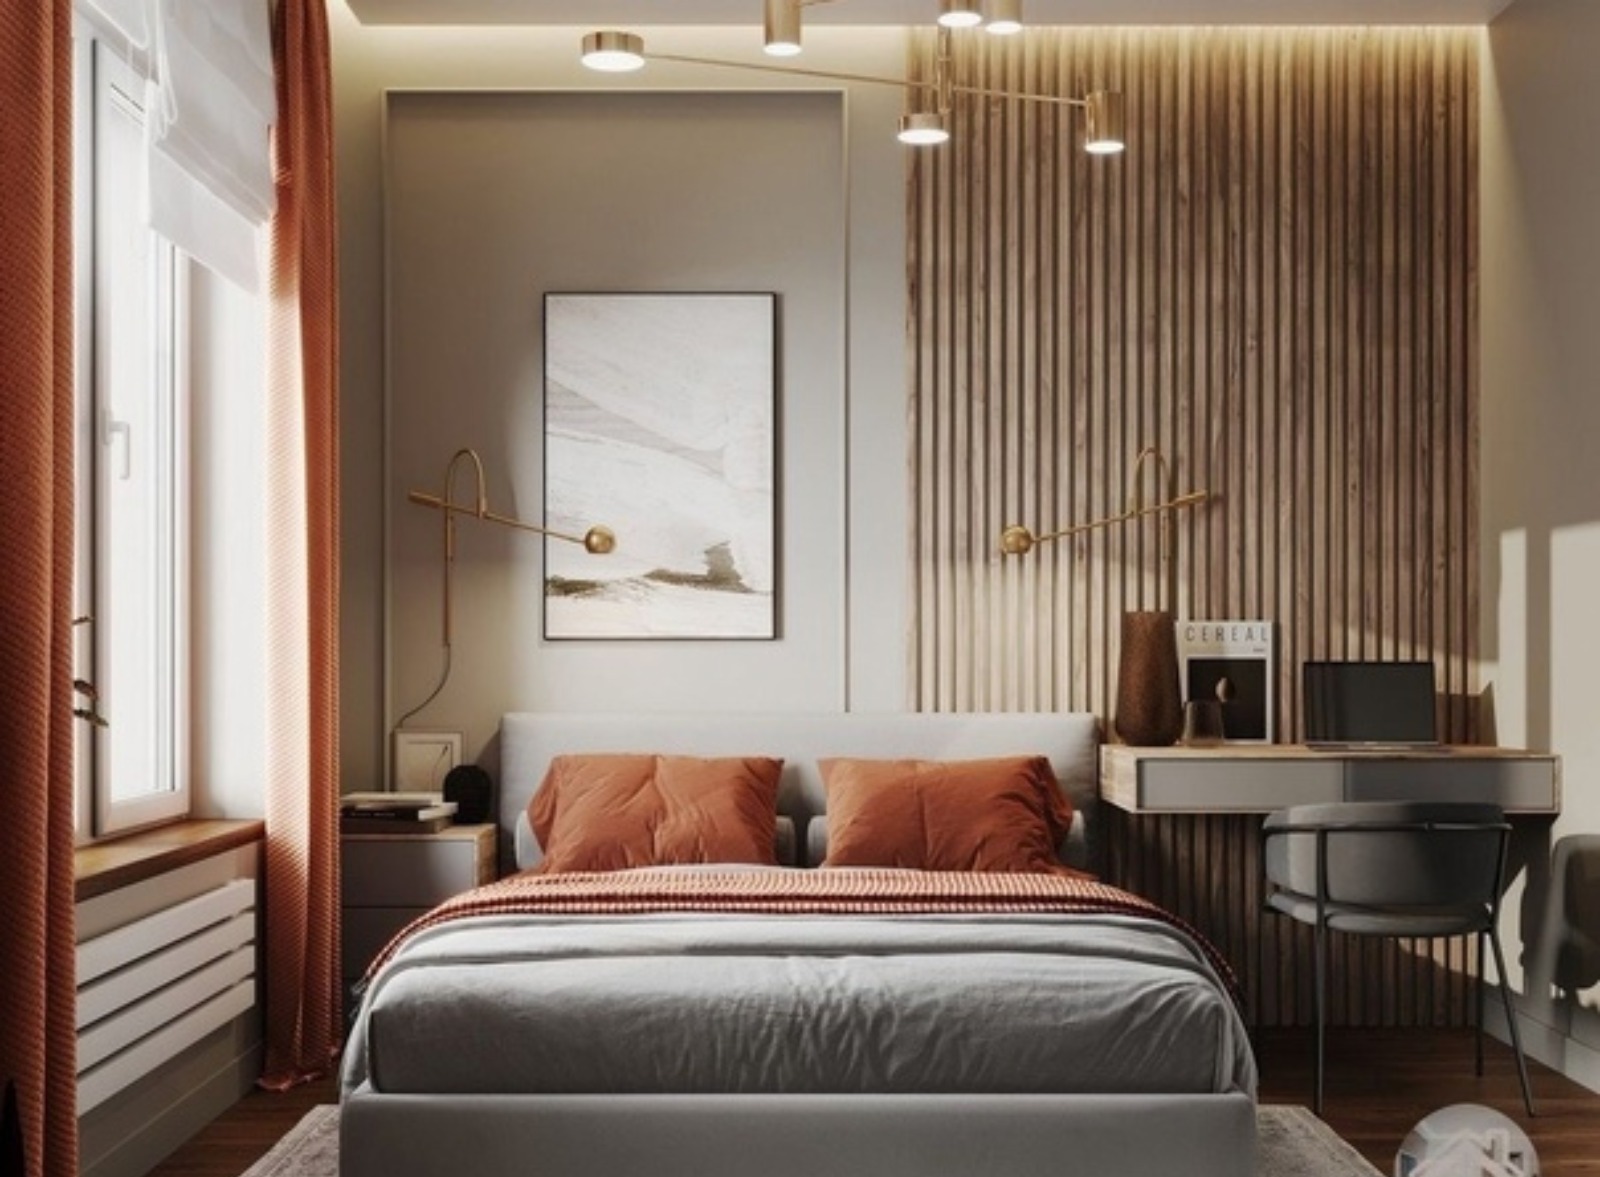 VTP Luxe Bavdhan comfortable bedroom